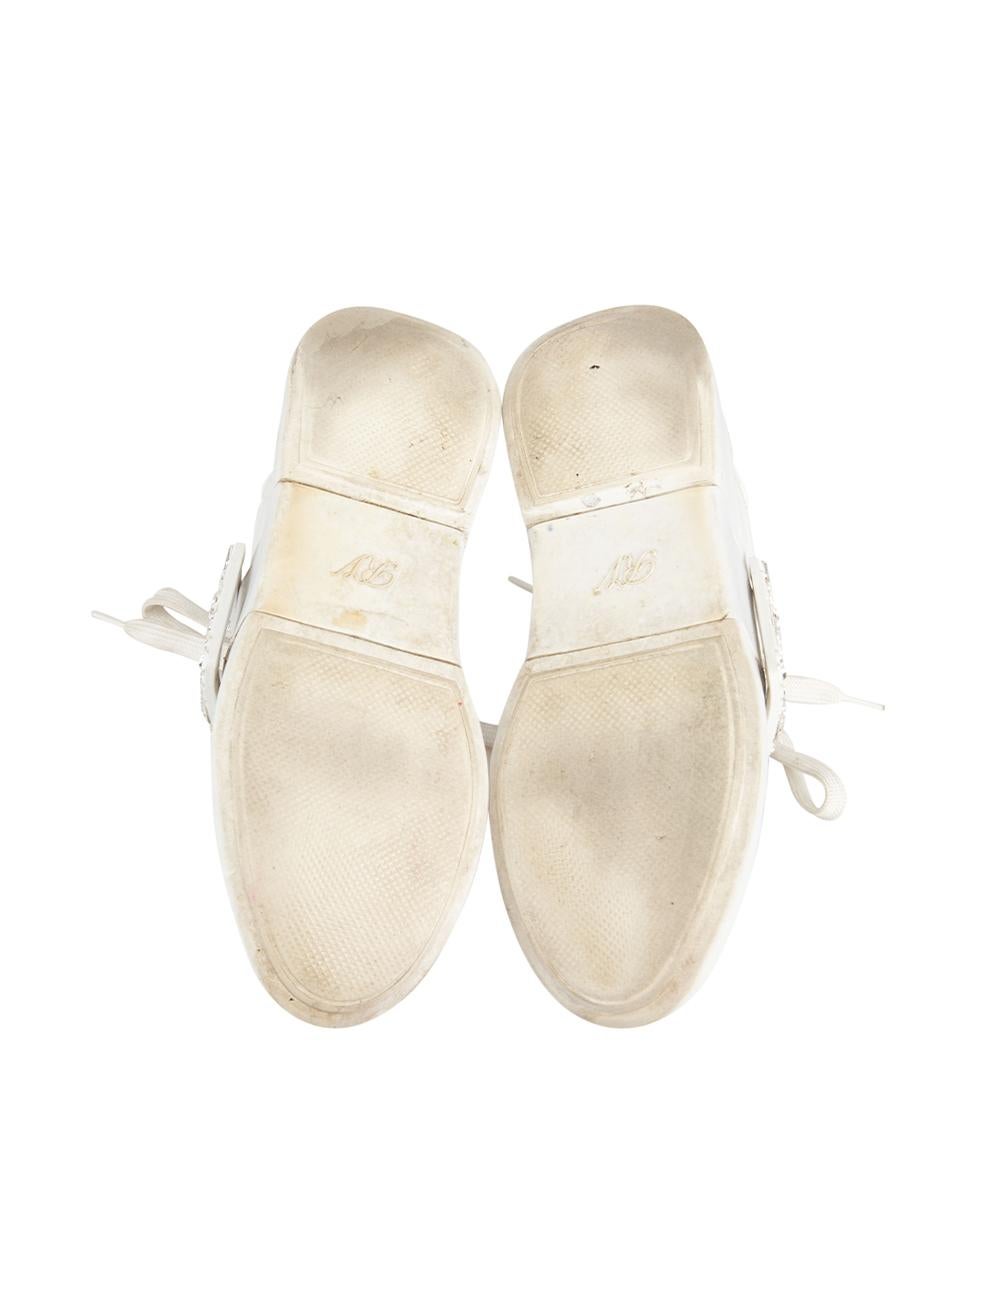 Roger Vivier Chaussures en cuir blanc avec cristaux Taille IT 36 Pour femmes en vente